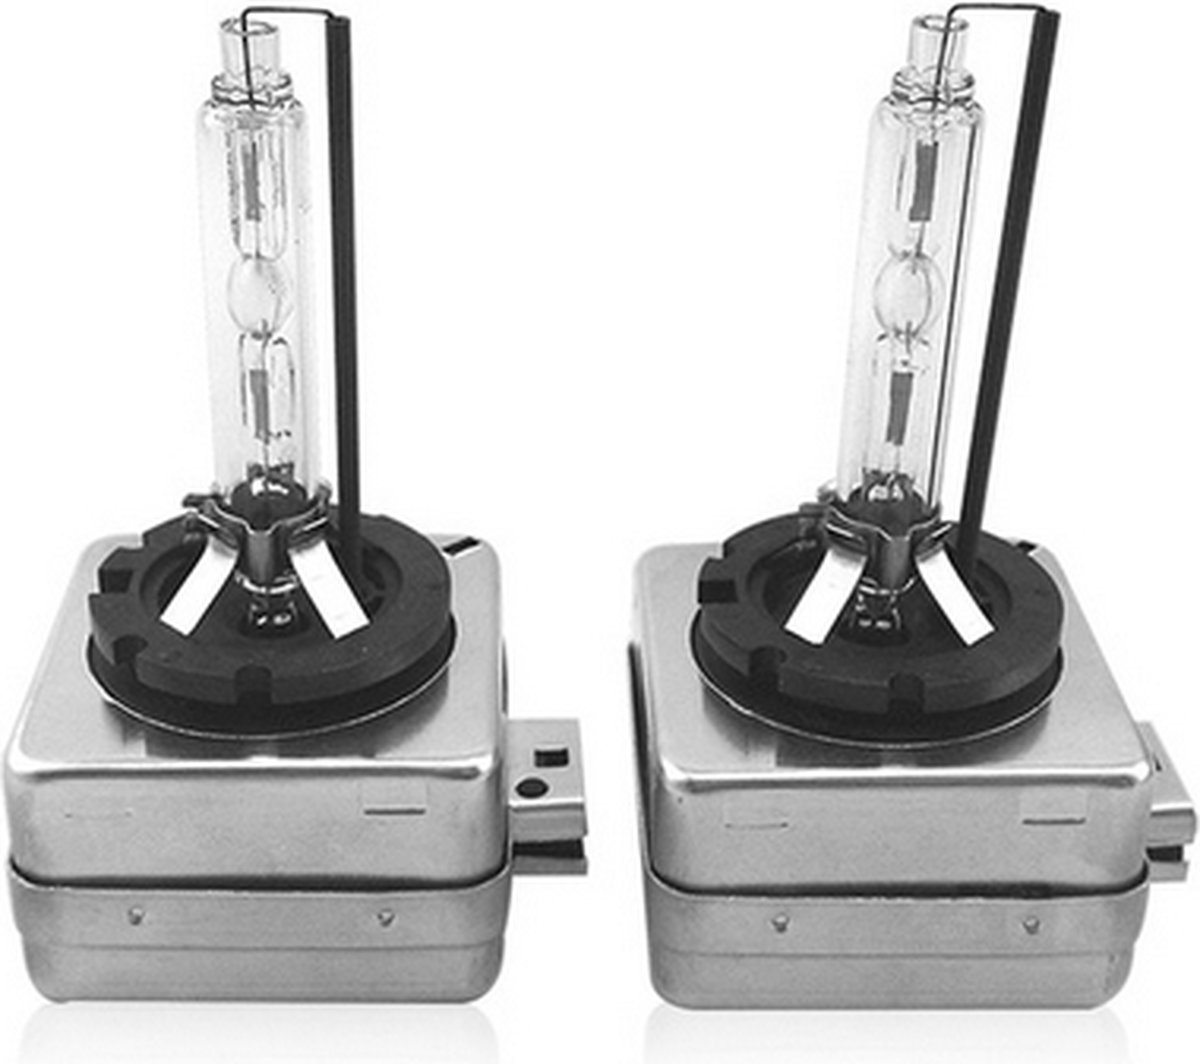 2 stuks D1S Xenon losse lamp vervanging 6000K +60% lichtopbrengst D1S fitting / HaverCo